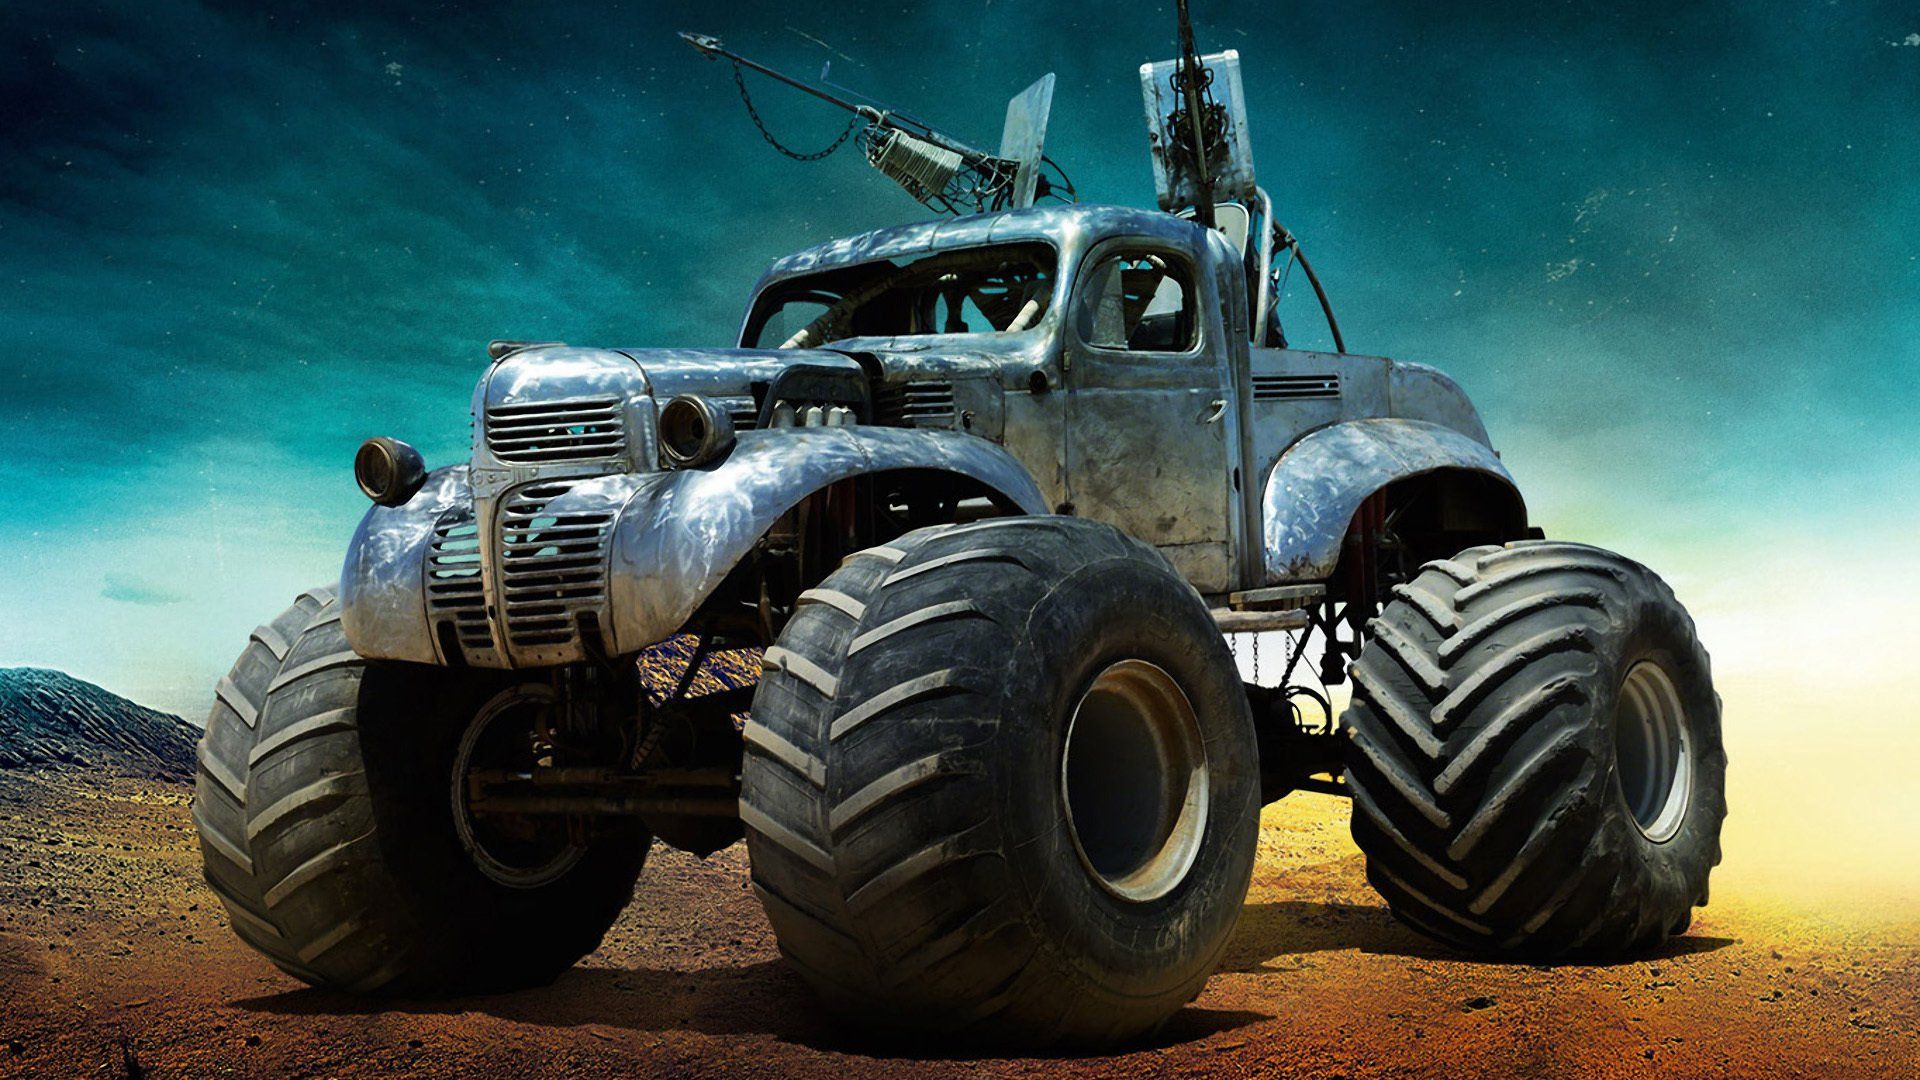 Jeep Sandstorm Hd Wallpaper - Mad Max Fury Road War Rig , HD Wallpaper & Backgrounds